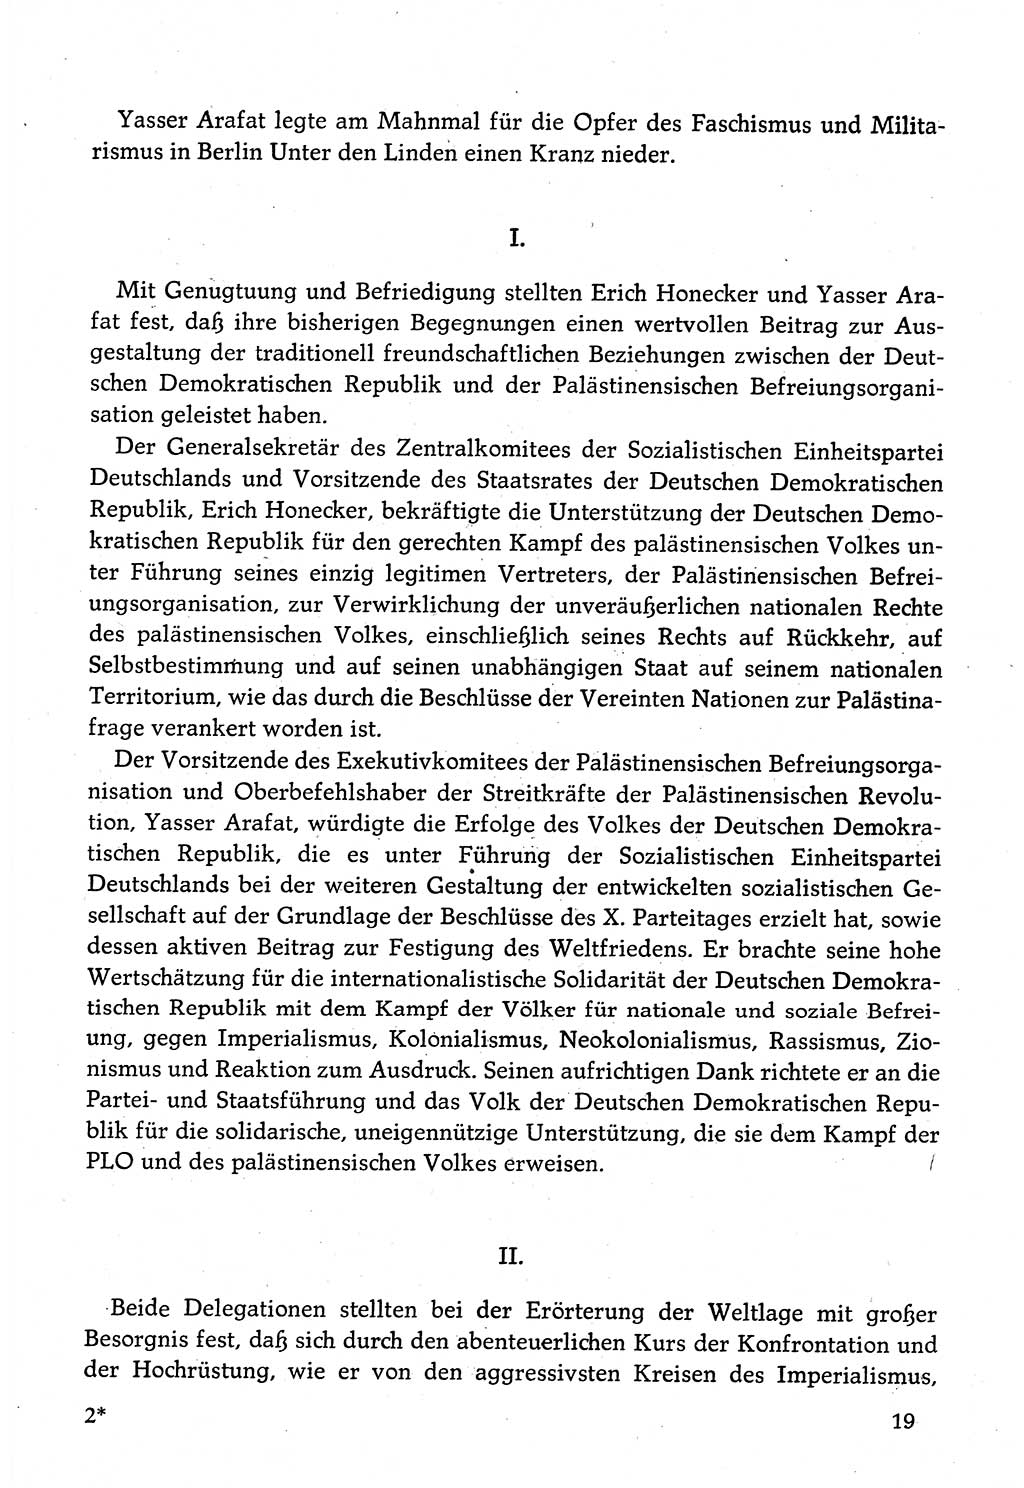 Dokumente der Sozialistischen Einheitspartei Deutschlands (SED) [Deutsche Demokratische Republik (DDR)] 1982-1983, Seite 19 (Dok. SED DDR 1982-1983, S. 19)